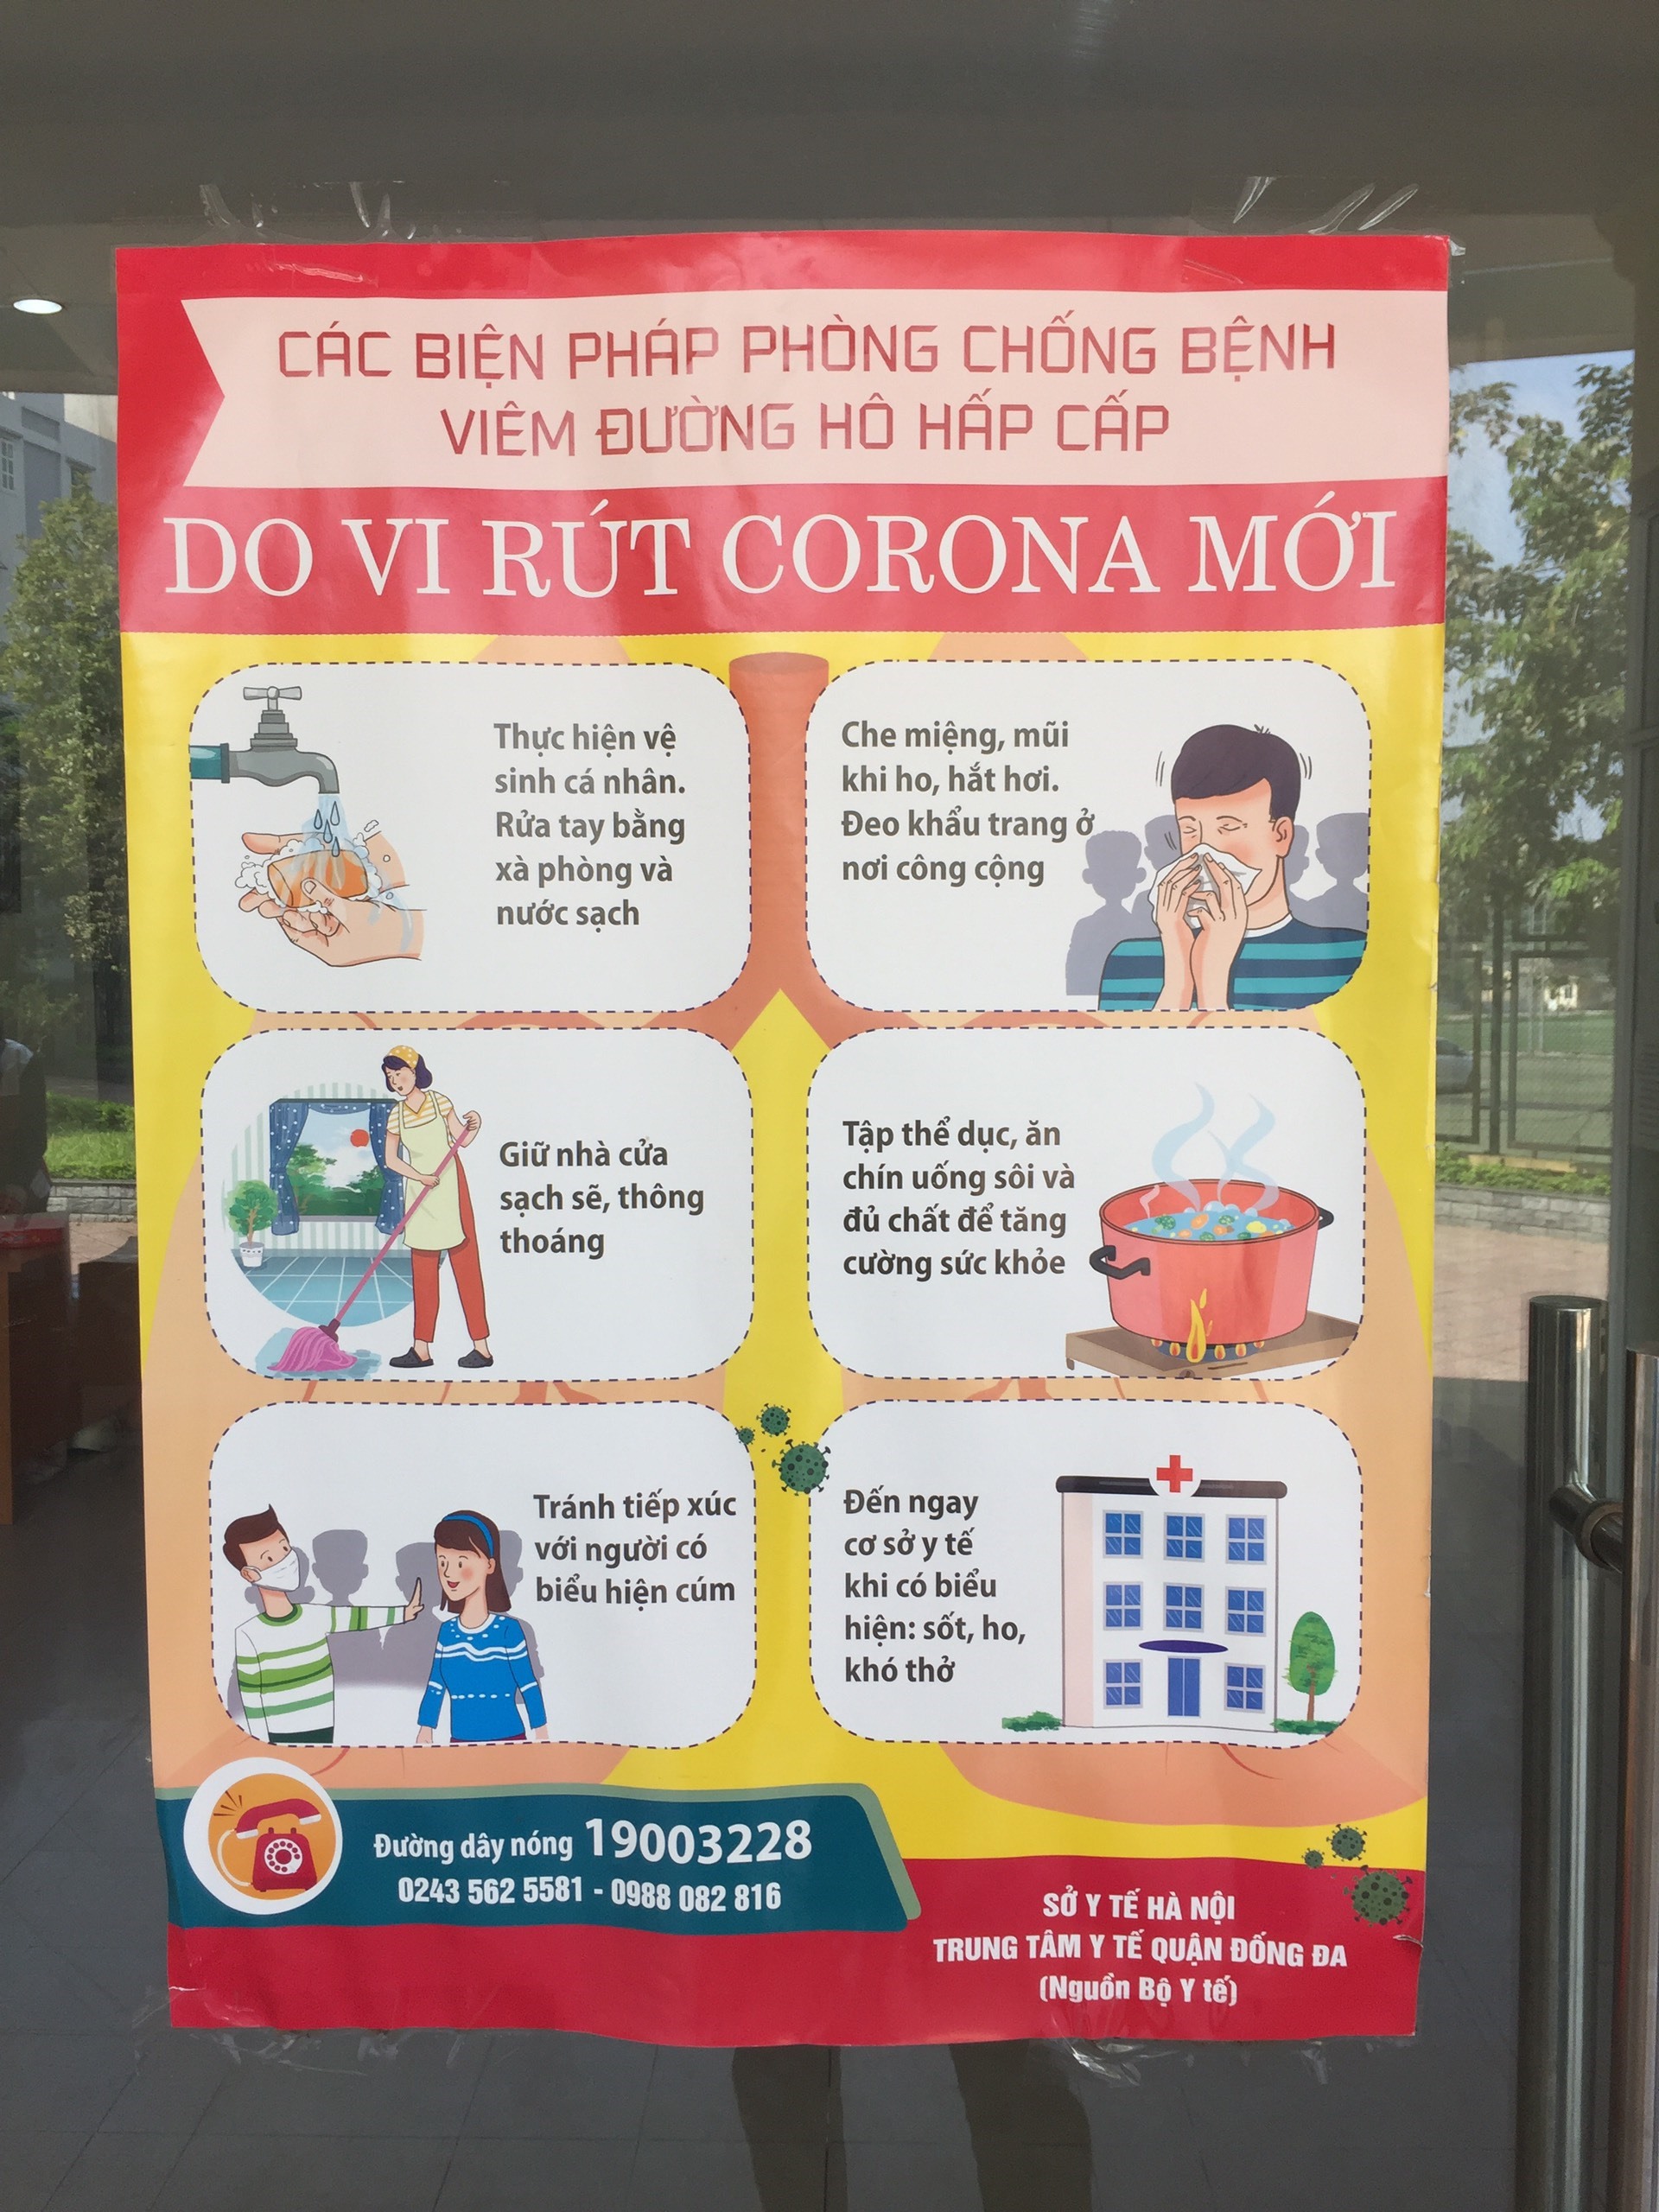 Bên trong khu kí túc xá Đại học Y Hà Nội luôn có thông báo về dịch COVID-19 để sinh viên chủ động nắm bắt tình hình.